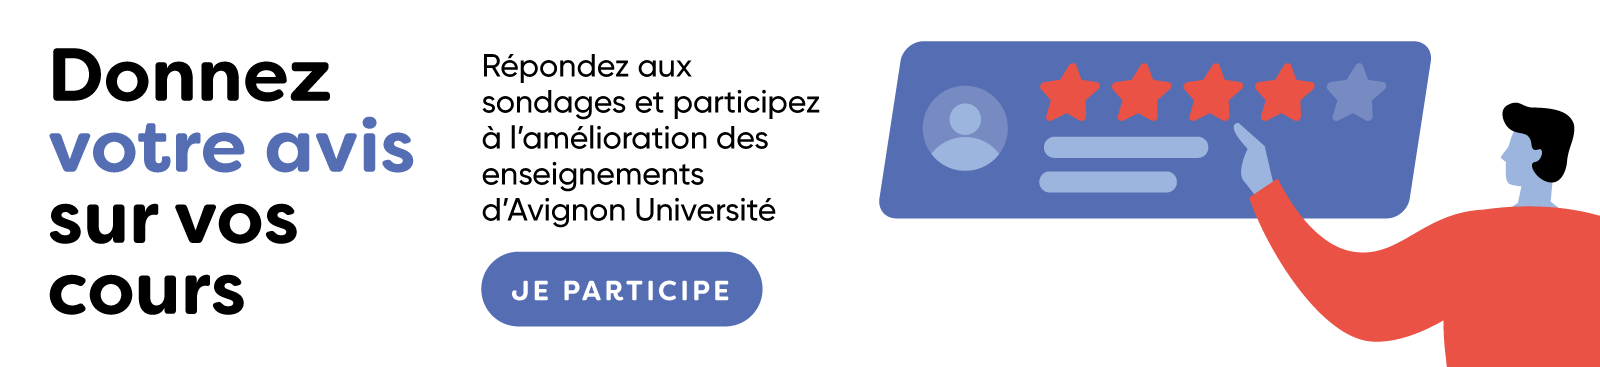 Répondez aux sondages et participez à l'amélioration des enseignements d'Avignon Université